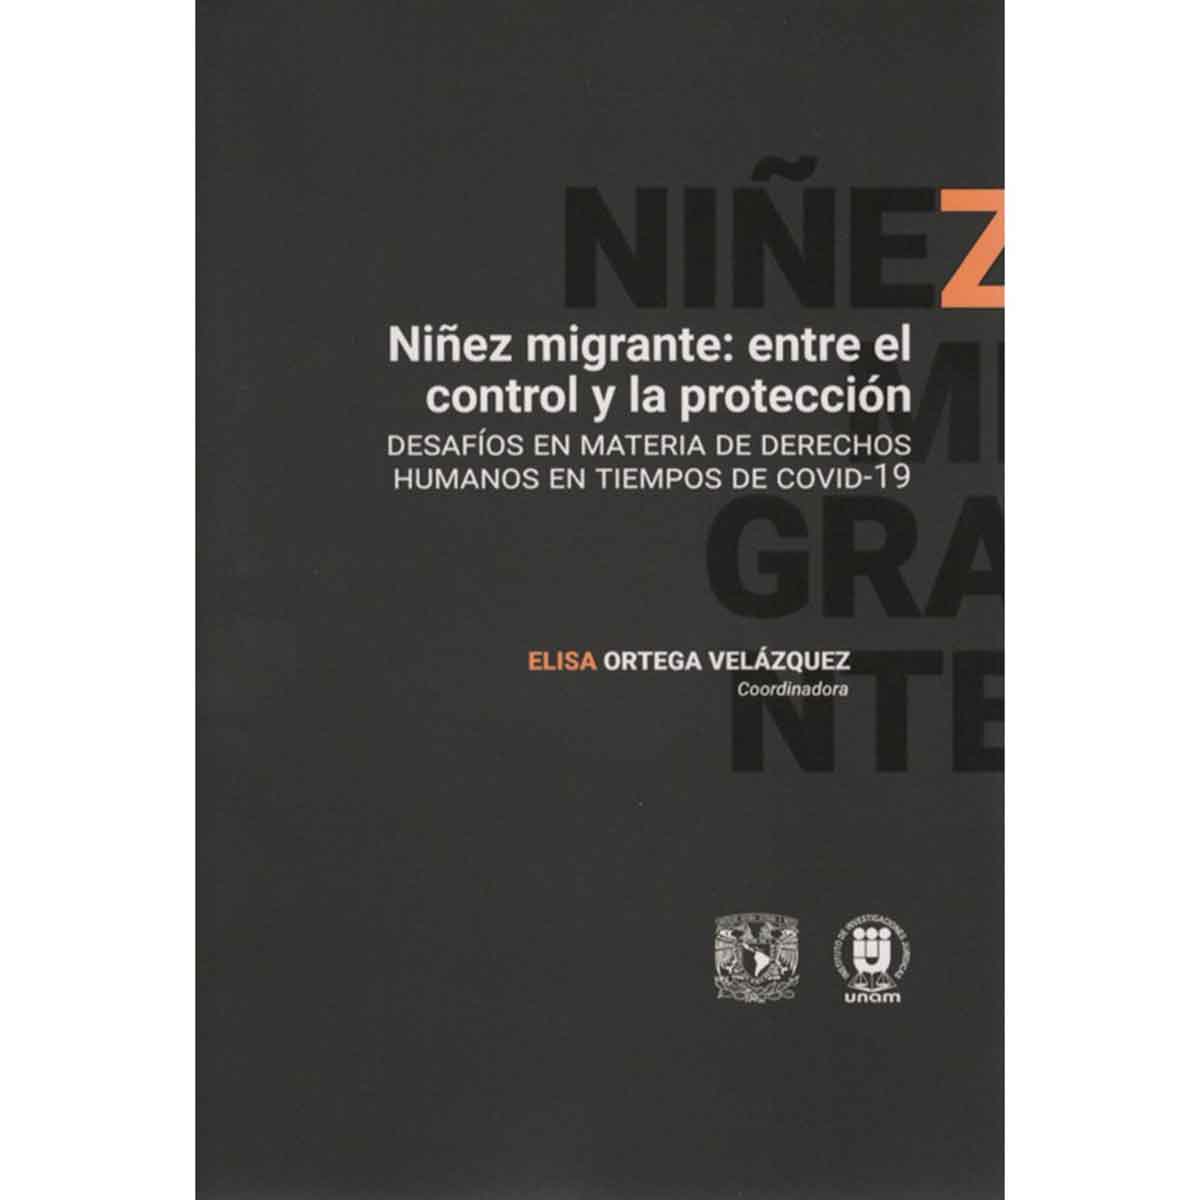 NIÑEZ MIGRANTE: ENTRE EL CONTROL Y LA PROTECCIÓN. DESAFÍOS EN MATERIA DE DERECHO HUMANOS EN TIEMPOS DE COVID-19